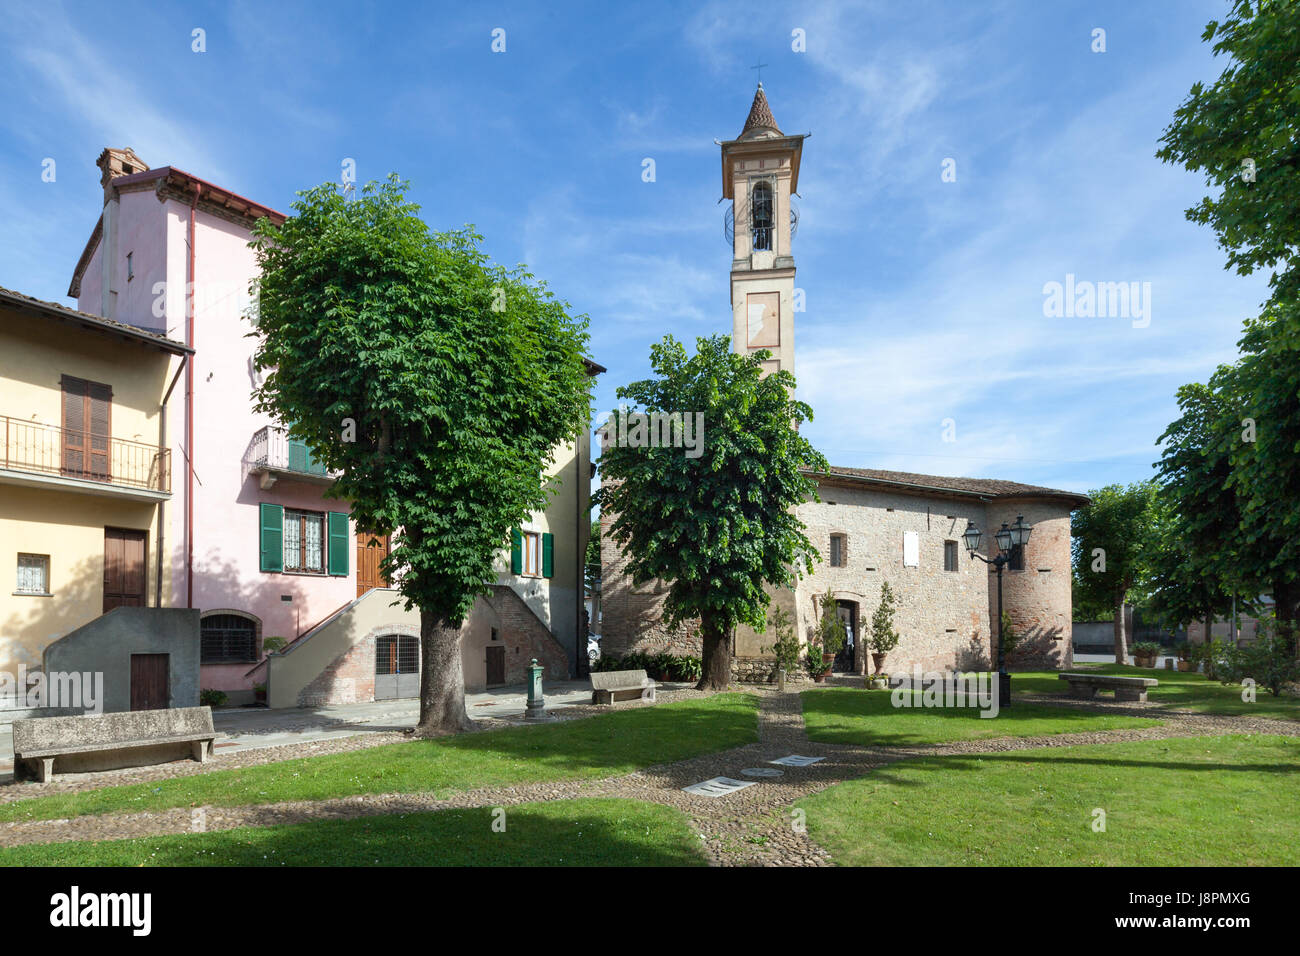 Ein Blick auf Casalnoceto mit der Chiesa di San Rocco (Kirche St. Rocco). Casalnoceto, Italien Stockfoto